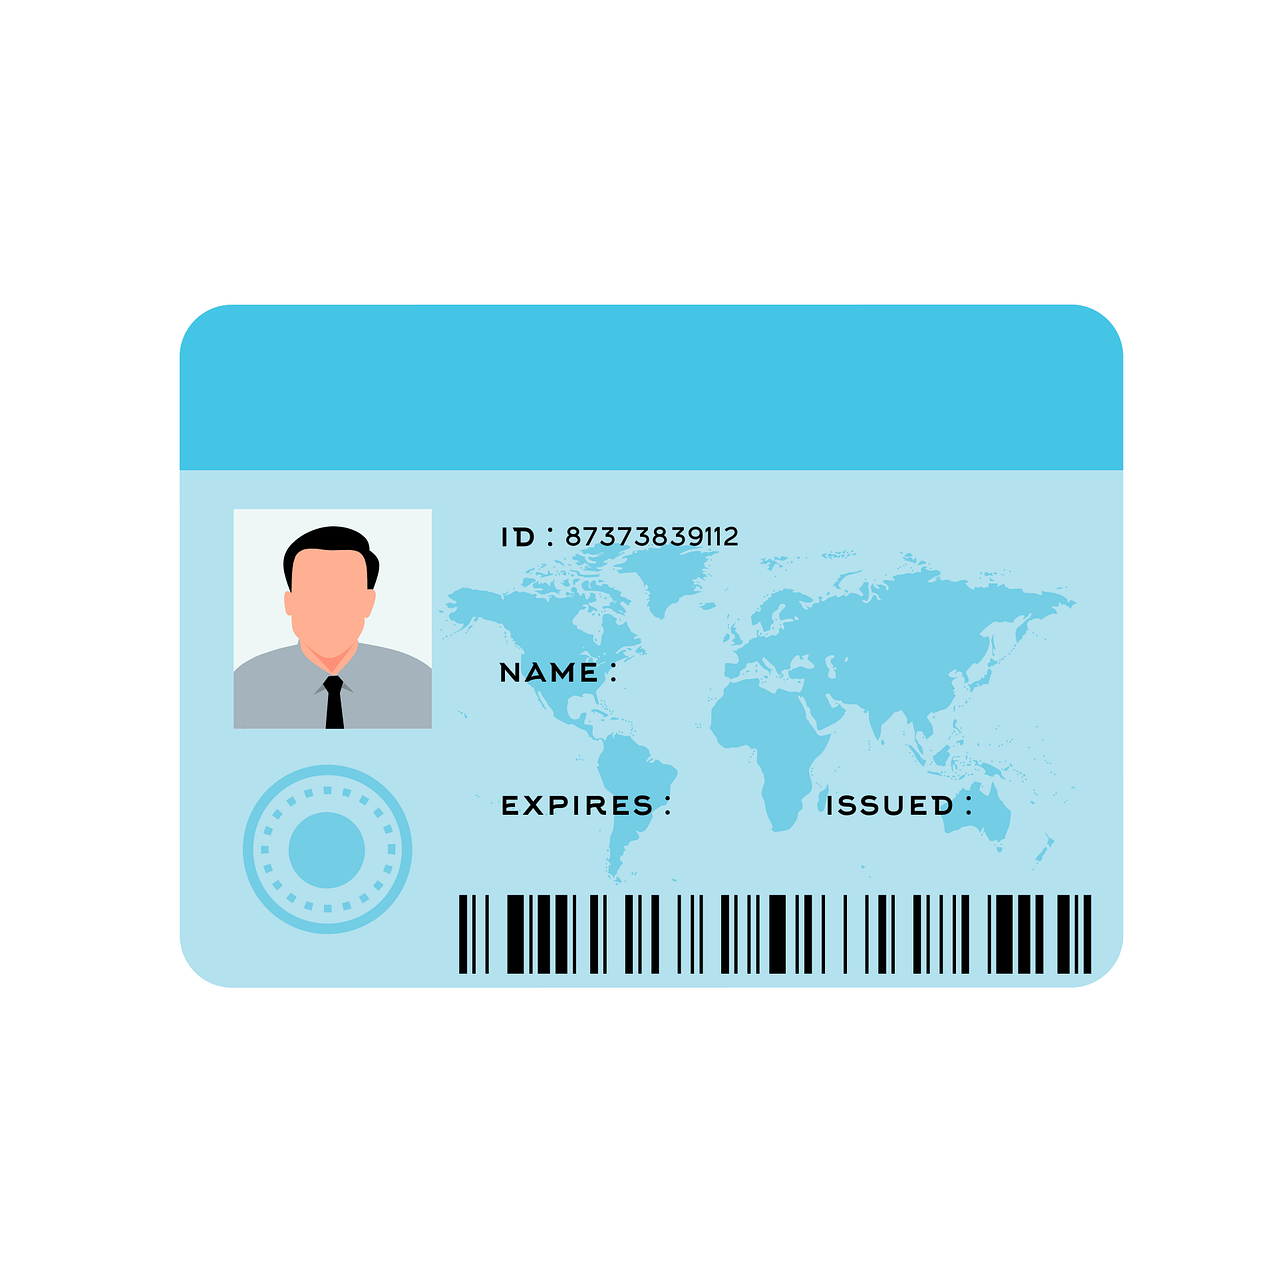 Carta d’identità elettronica, ecco come sostituirà lo spid